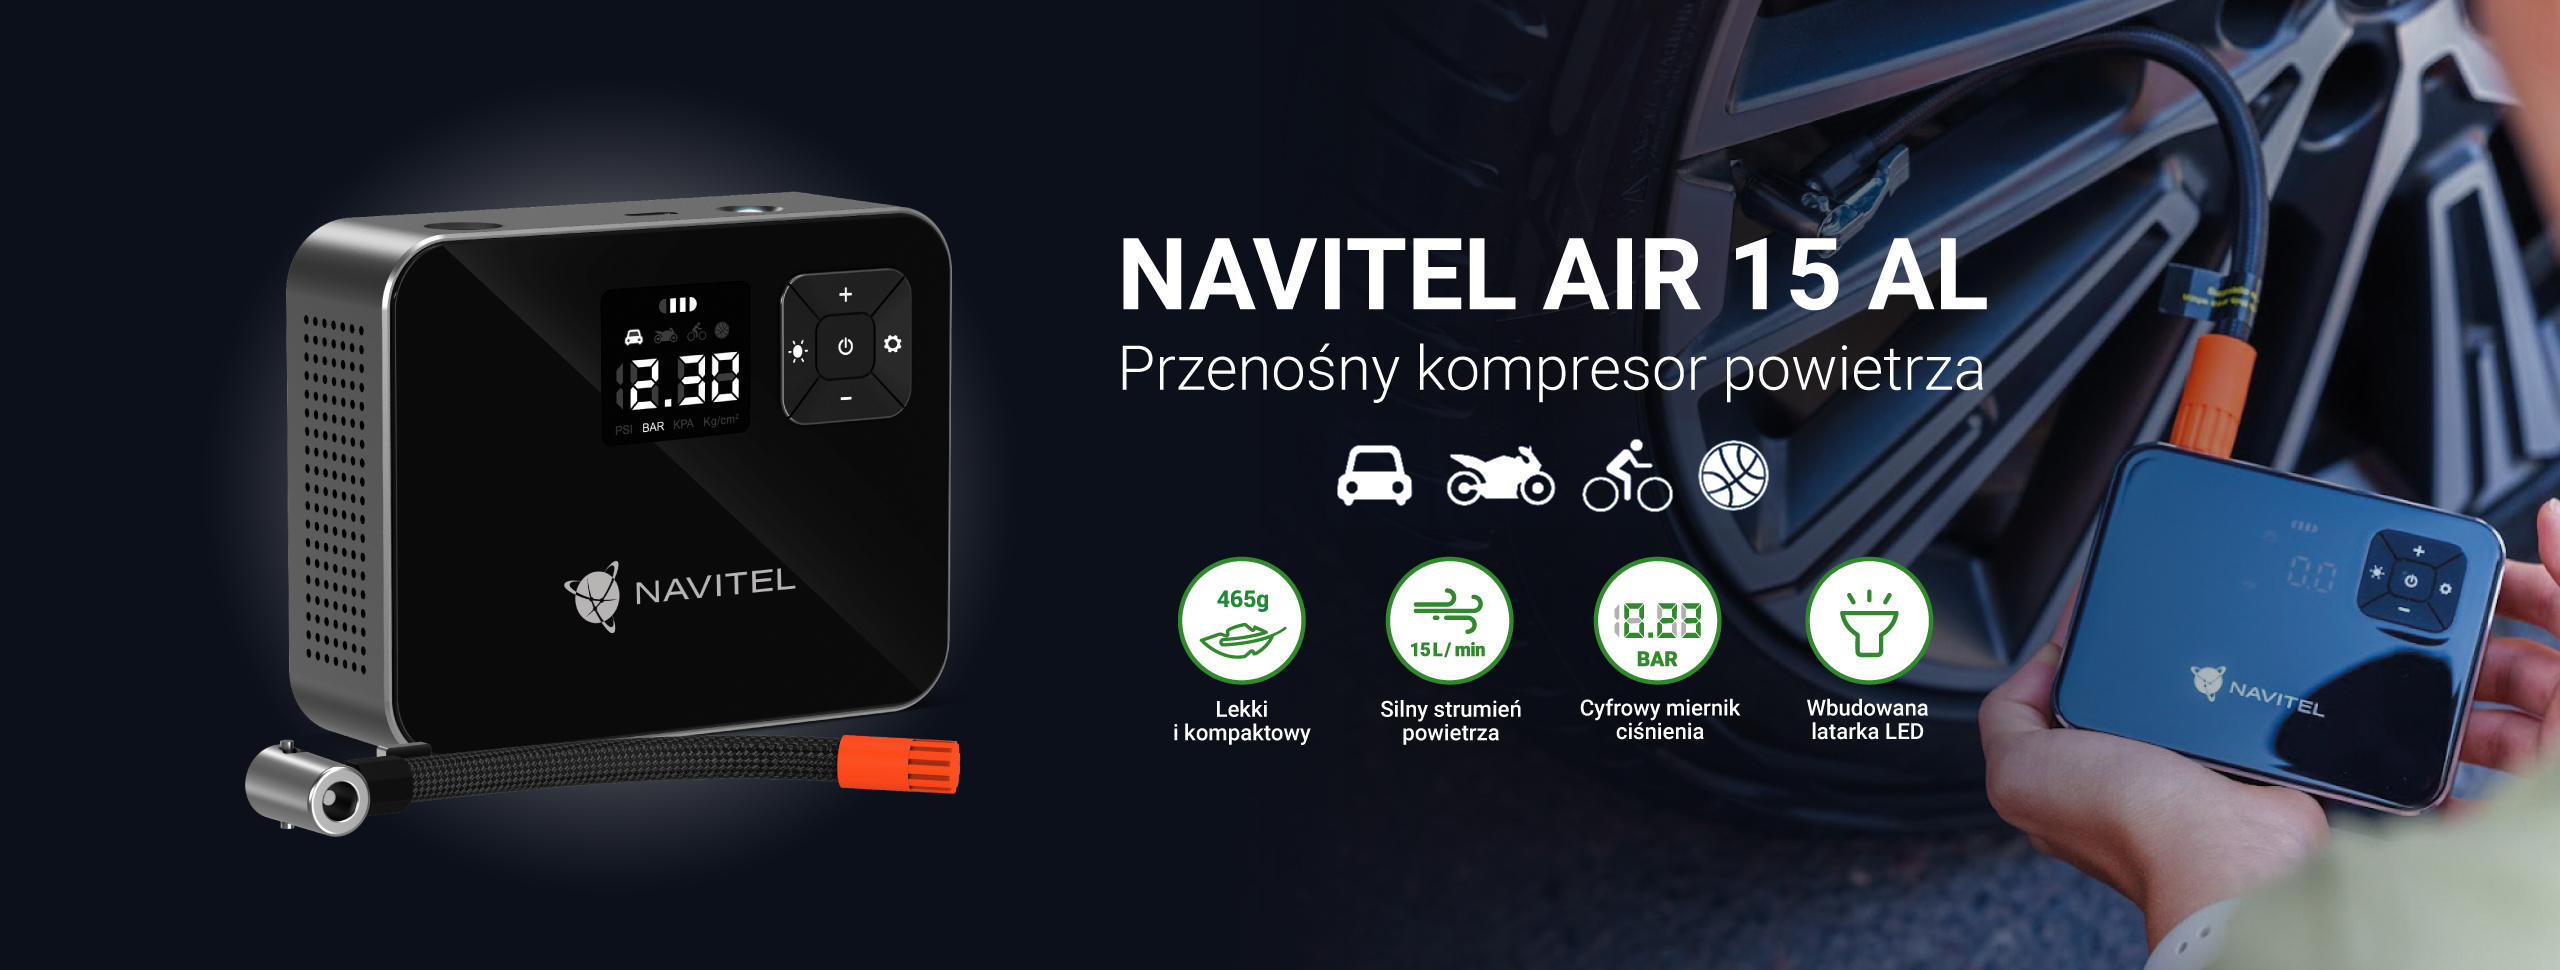 NAVITEL AIR 15 AL – ultrawydajny kompresor powietrza o uniwersalnym zastosowaniu